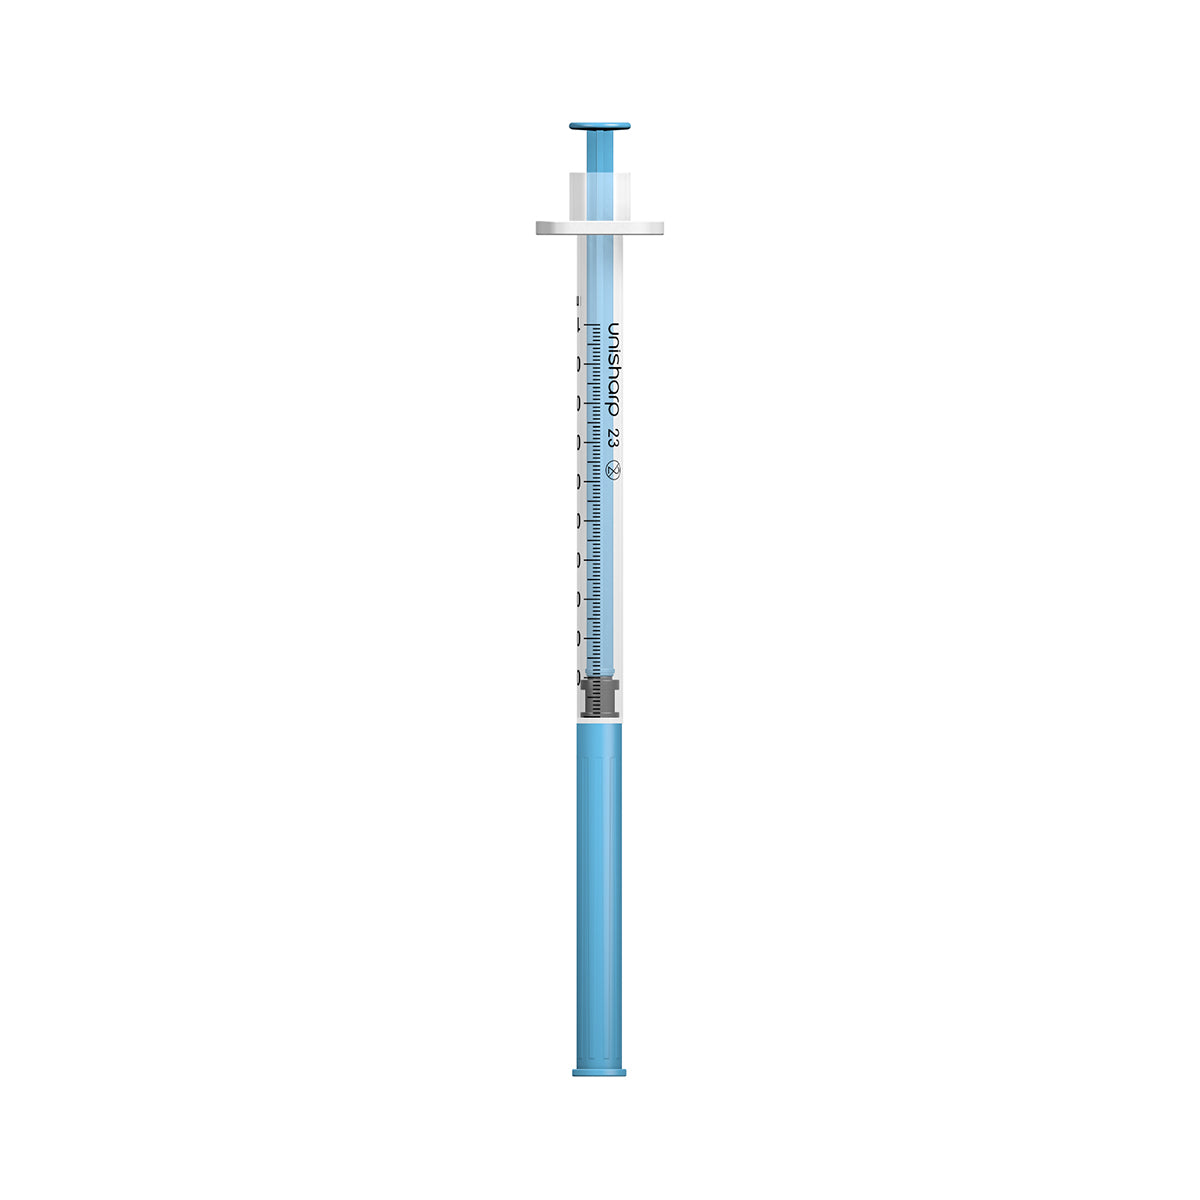 Unisharp 1mL 23G 32mm (1 1/4 inch) fixed needle syringe